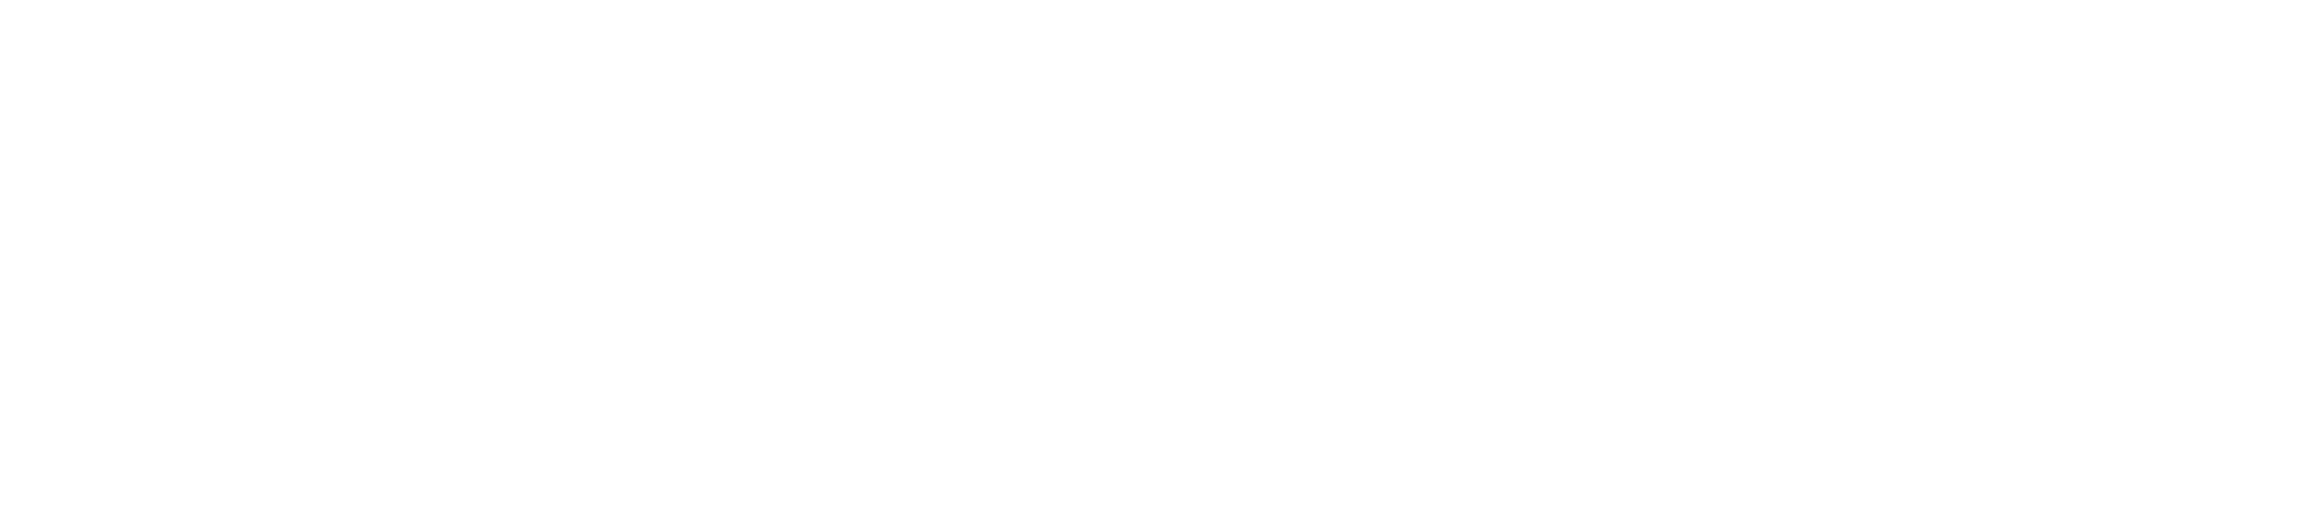 SpeedTree Logo - Corporate Logos – SpeedTree